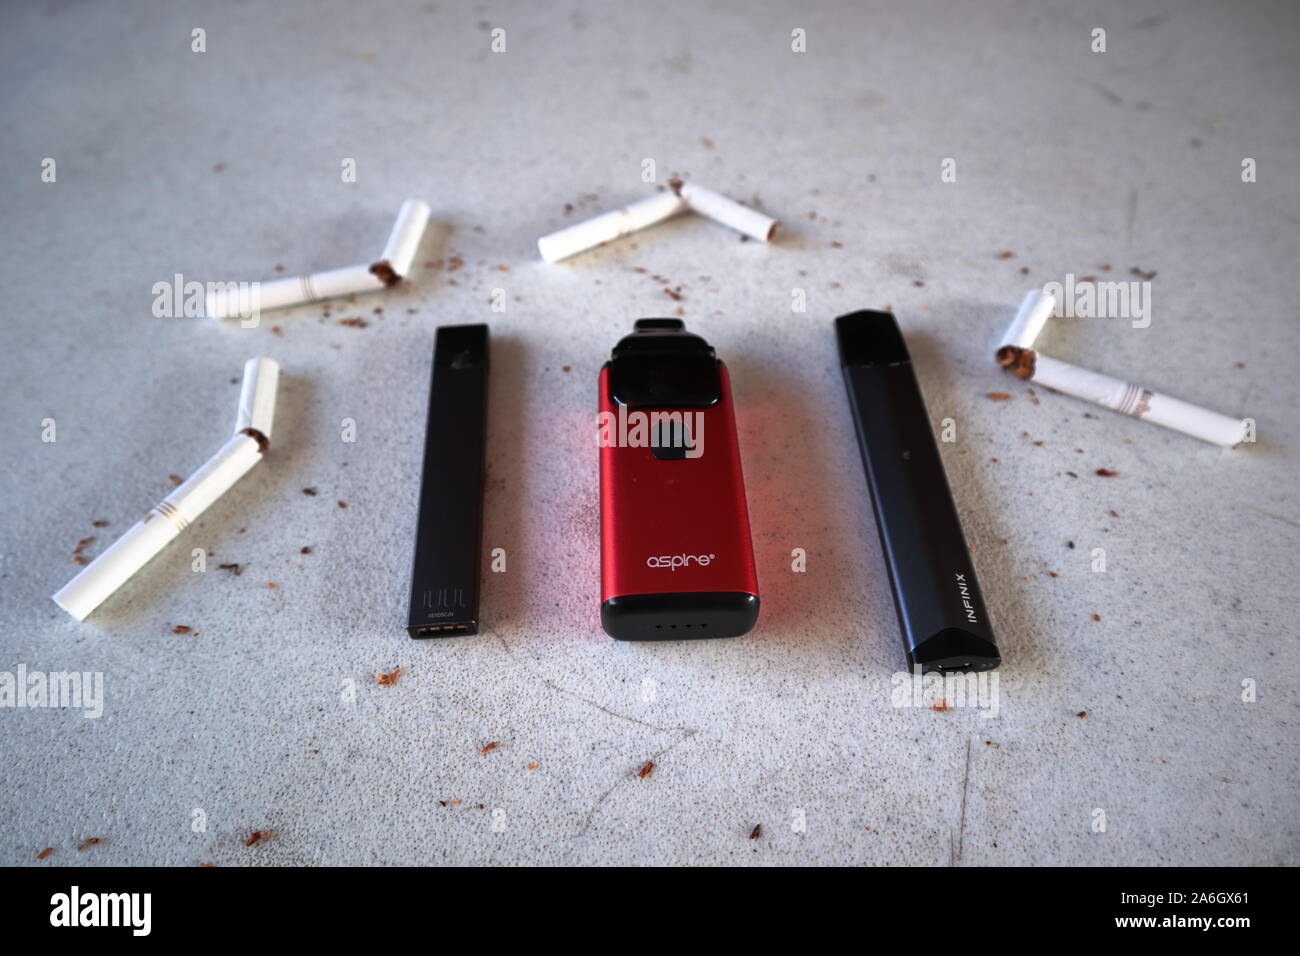 Diversi dispositivi di vape le sigarette elettroniche juul, aspirano breeze, smok infinix, come fumare alternative con rotte oro marlboro sigarette e scatt Foto Stock